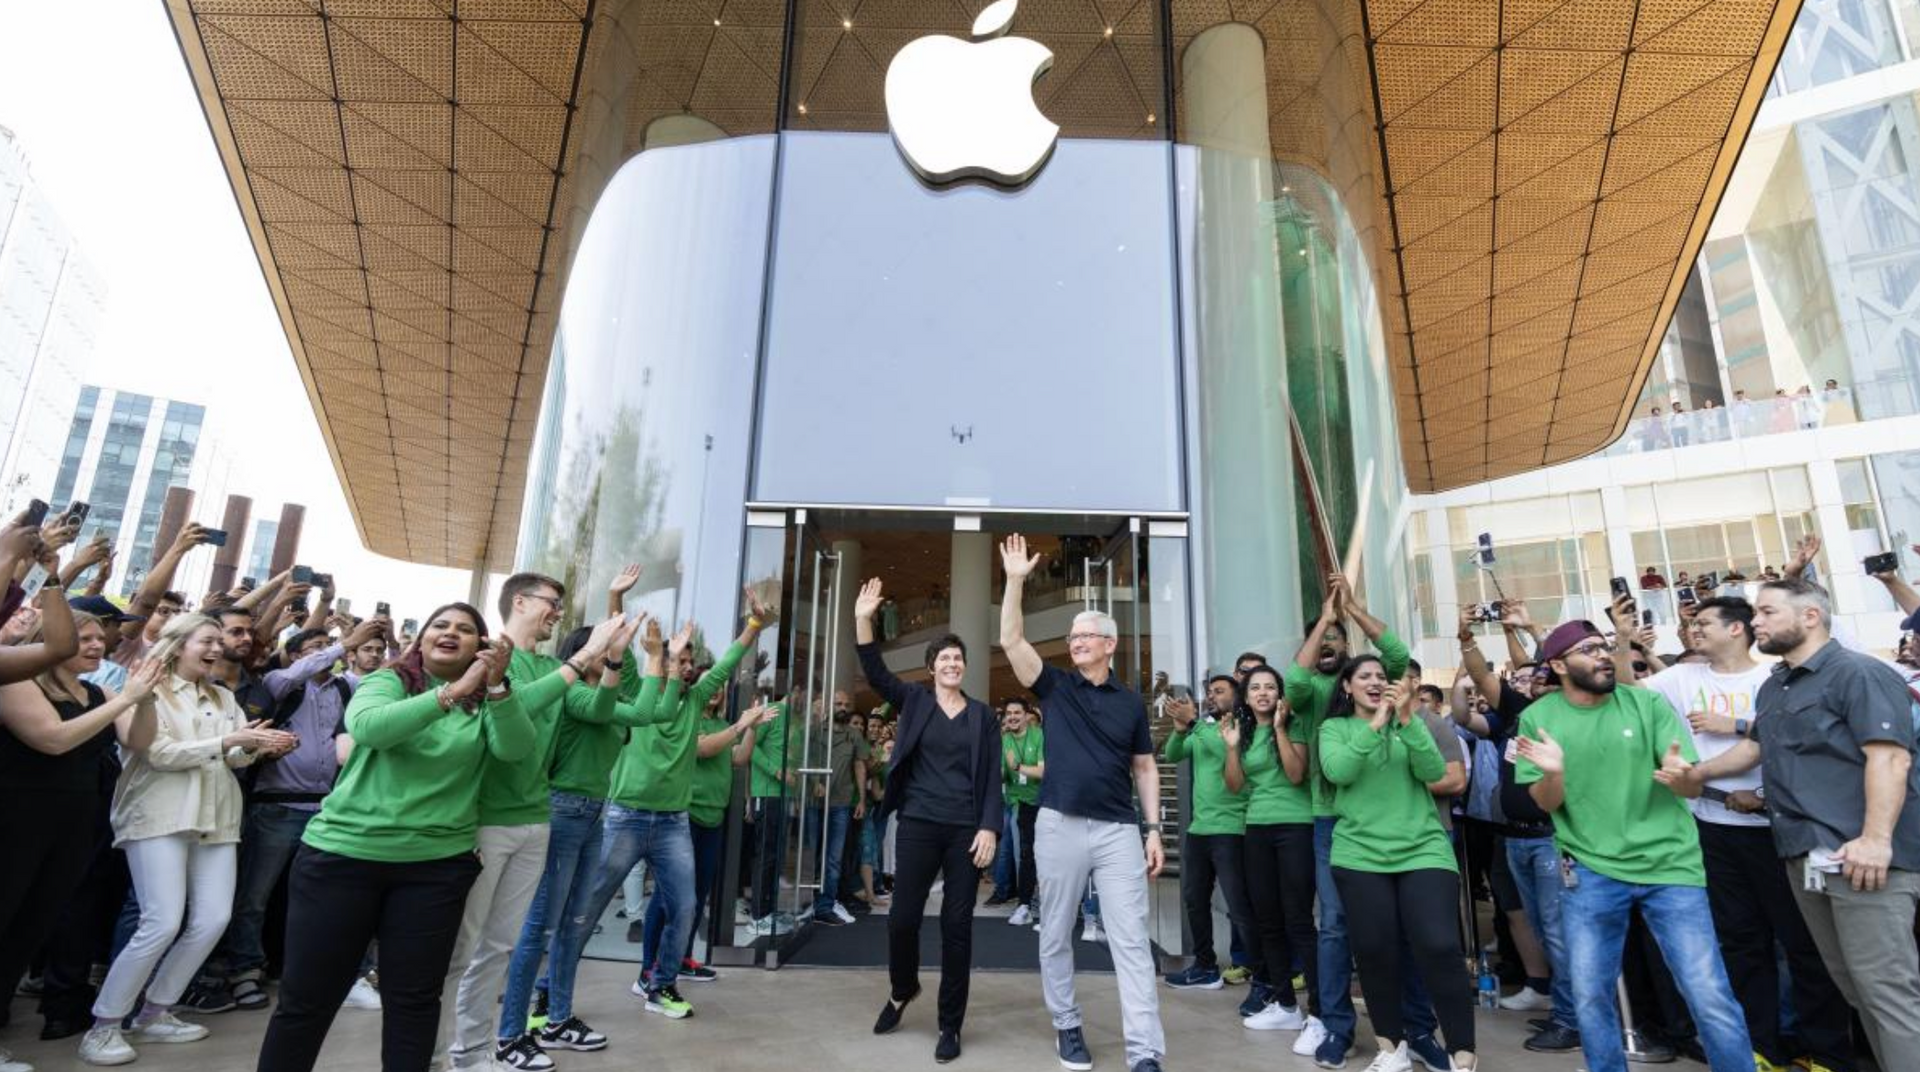 Theo dõi sát sao chuyến thăm Ấn Độ của Tim Cook, cư dân mạng Trung Quốc lo sợ Apple mang toàn bộ chuỗi cung ứng ra khỏi đại lục - Ảnh 1.